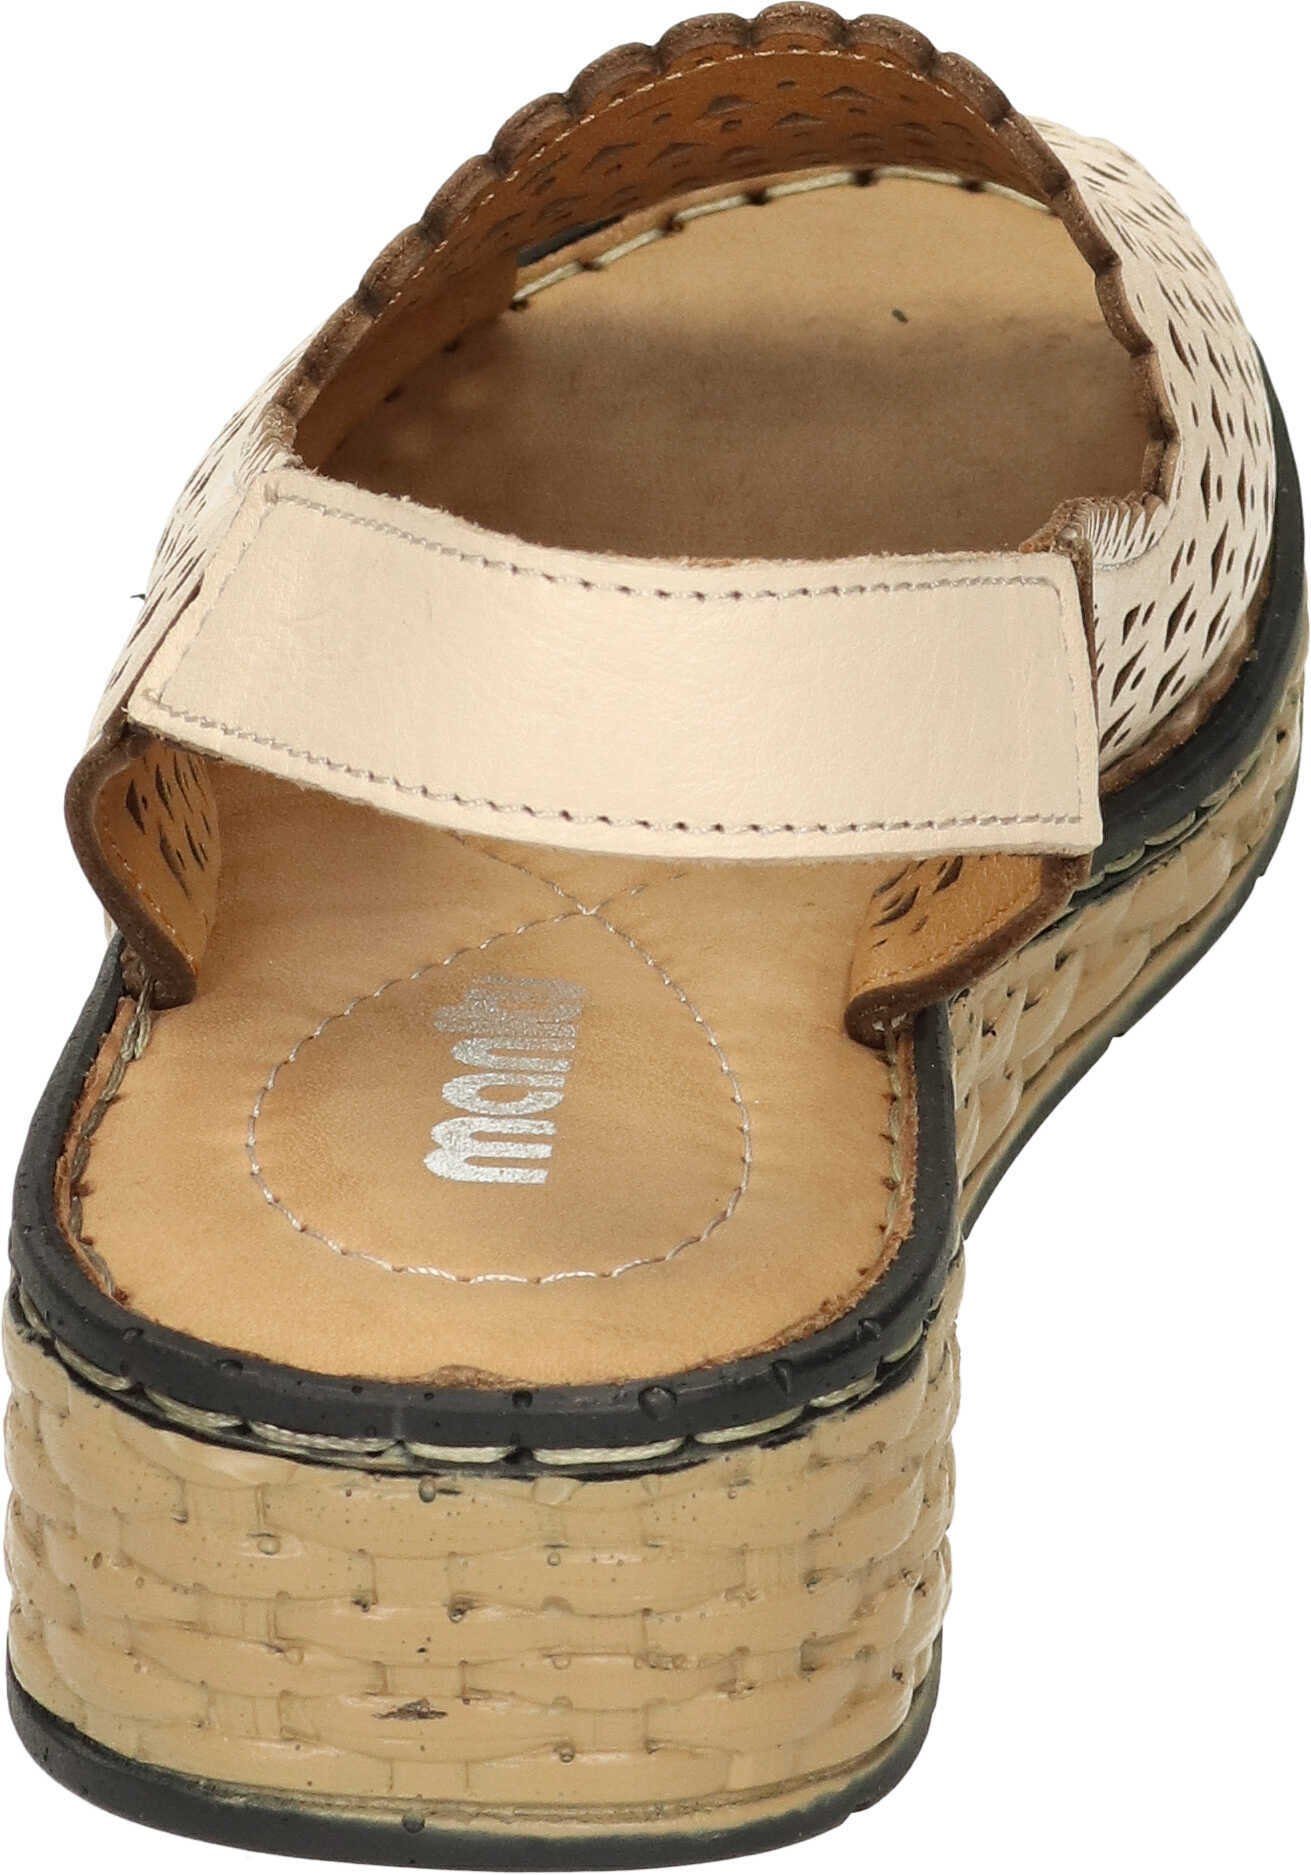 Sandalette Sandaletten beige Leder echtem Manitu aus